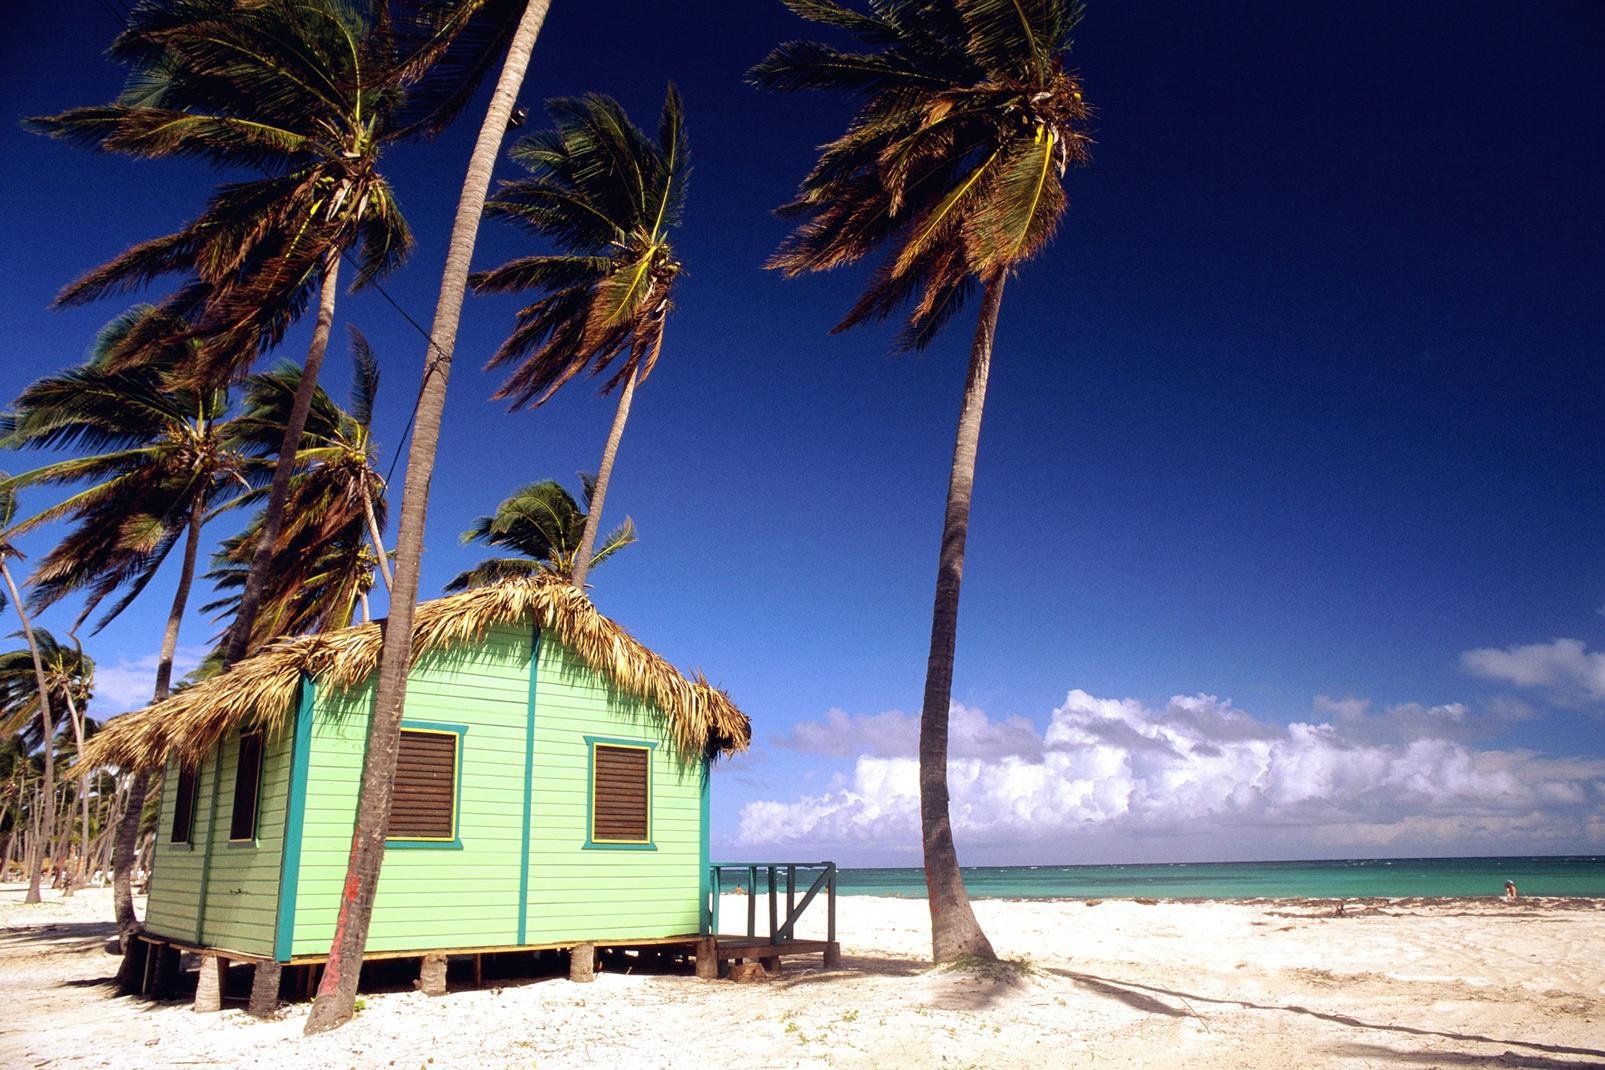 Entre mer des Caraïbes et océan Atlantique, Punta Cana est le spot balnéaire le plus réputé de République dominicaine. Et pour cause... Ces merveilleuses plages s'étendent sur plus de 50 km, d'Uvero Alto au nord à Juanillo au sud, en passant par Macao, Arena Gorda, Bavaro (la plus connue et la plus longue, où se concentre la majorité des resorts) et Cabeza de Toro. Eau transparente, cocotiers, sable ...